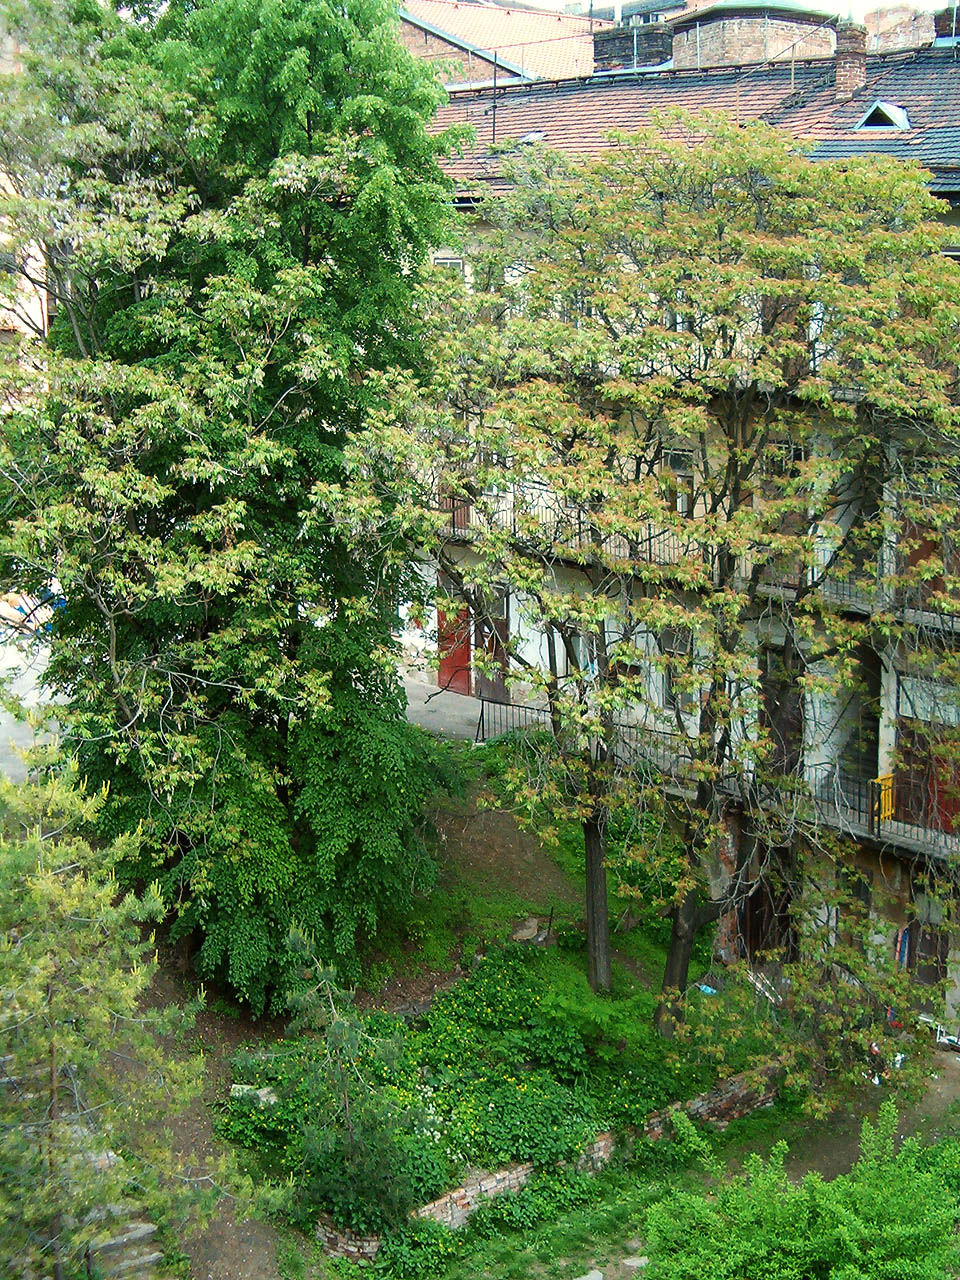 Stromy (nejen) na místě zbouraného prostředního traktu dodávaly občas dvoru vzhled botanické zahrady. při stavbě moderního bytového domu byla většina z nich vykácena.